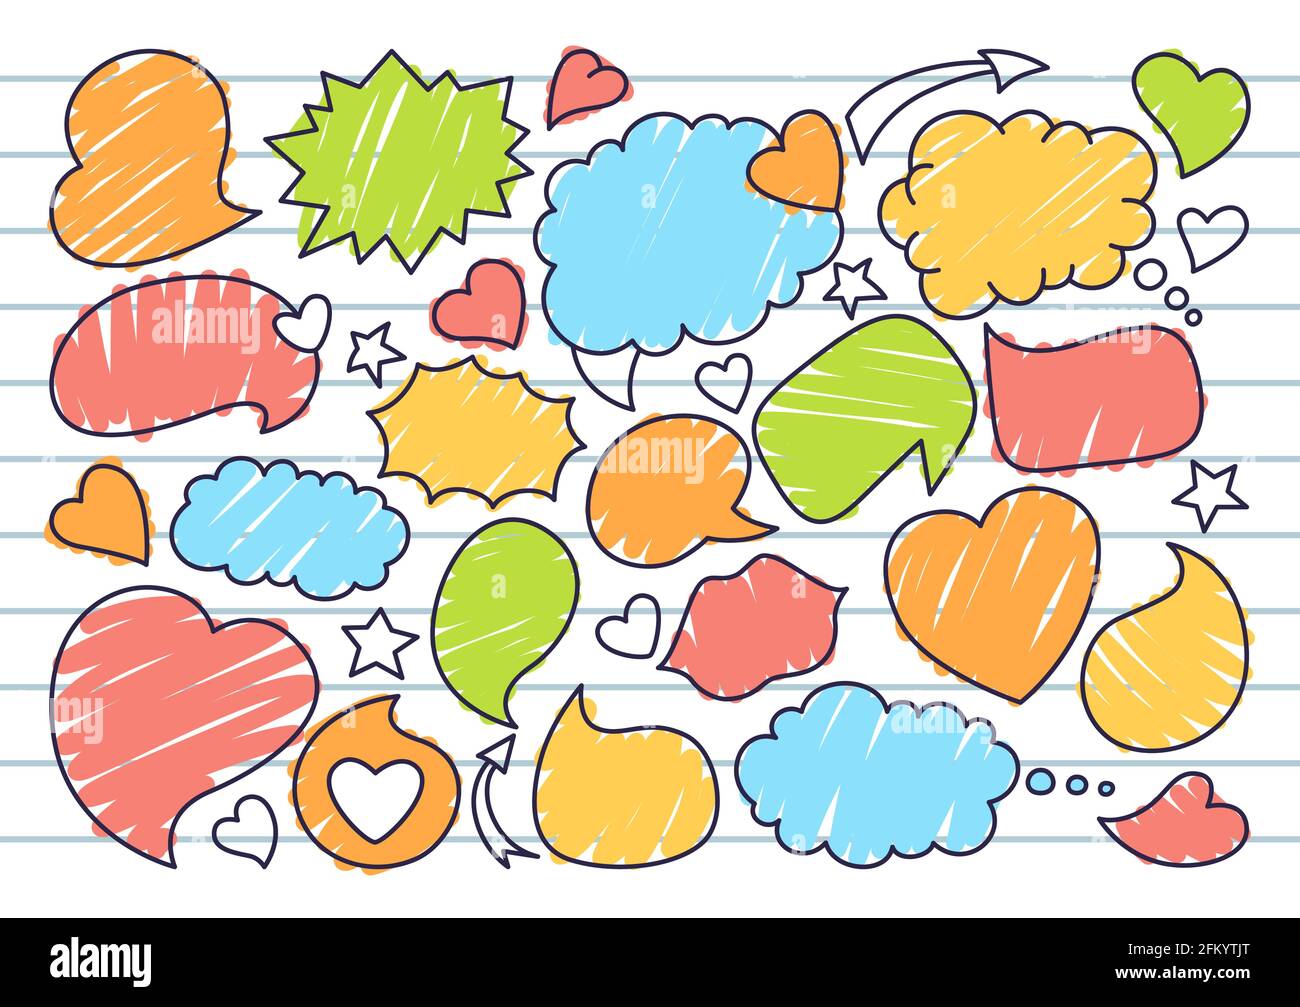 Speech bubble sketch doodle set, linea di sfondo notebook. Elementi di disegno pop art dialoga nuvole per testo, banner d'amore. Libro fumetti dell'icona di blobs di pensiero di discorso. Illustrazione vettoriale cartoon disegnata a mano Illustrazione Vettoriale